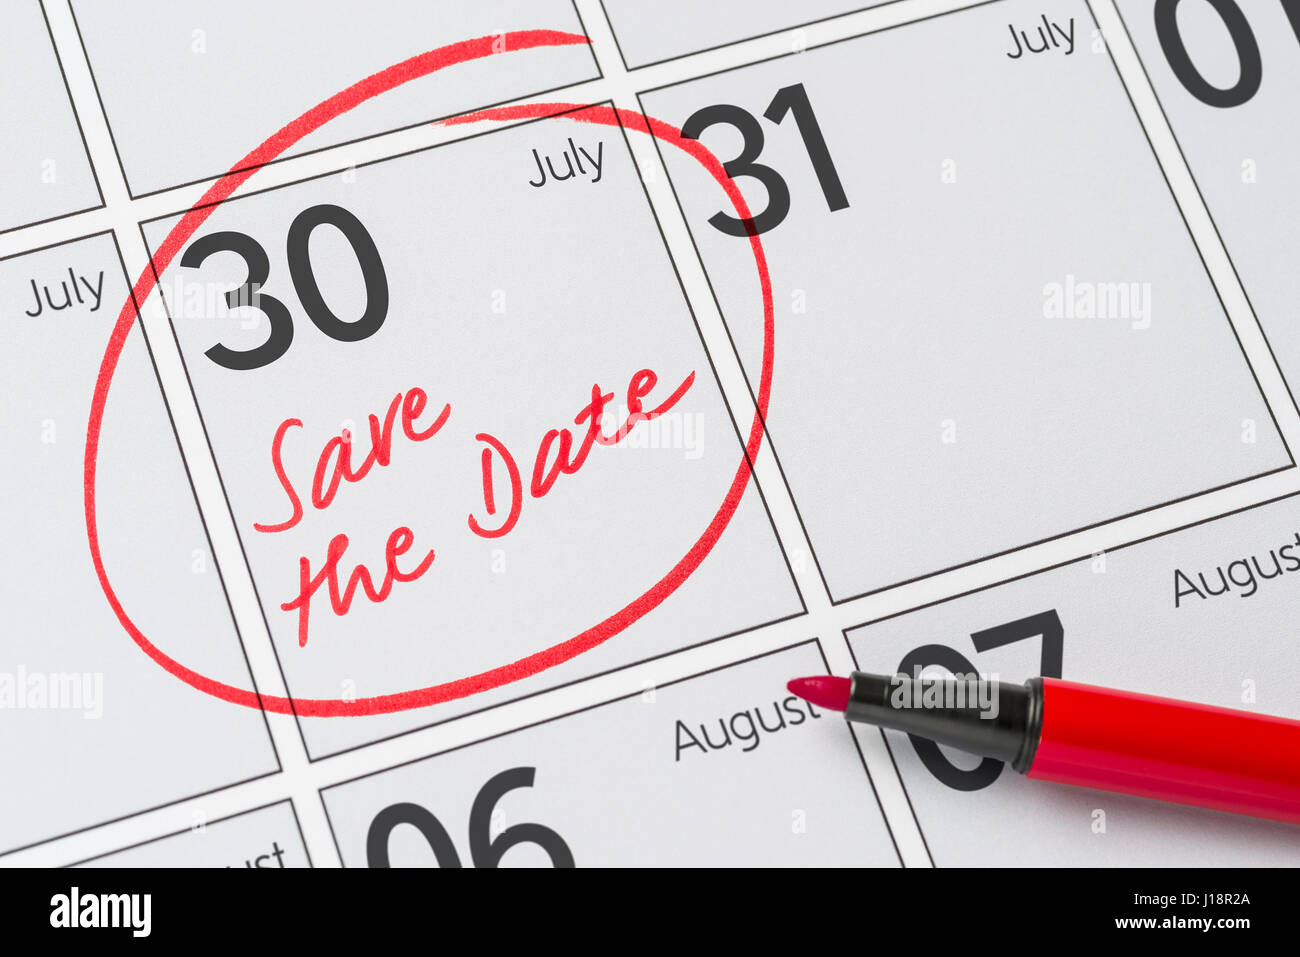 Enregistrer la date inscrite sur un calendrier - Juillet 30 Banque D'Images